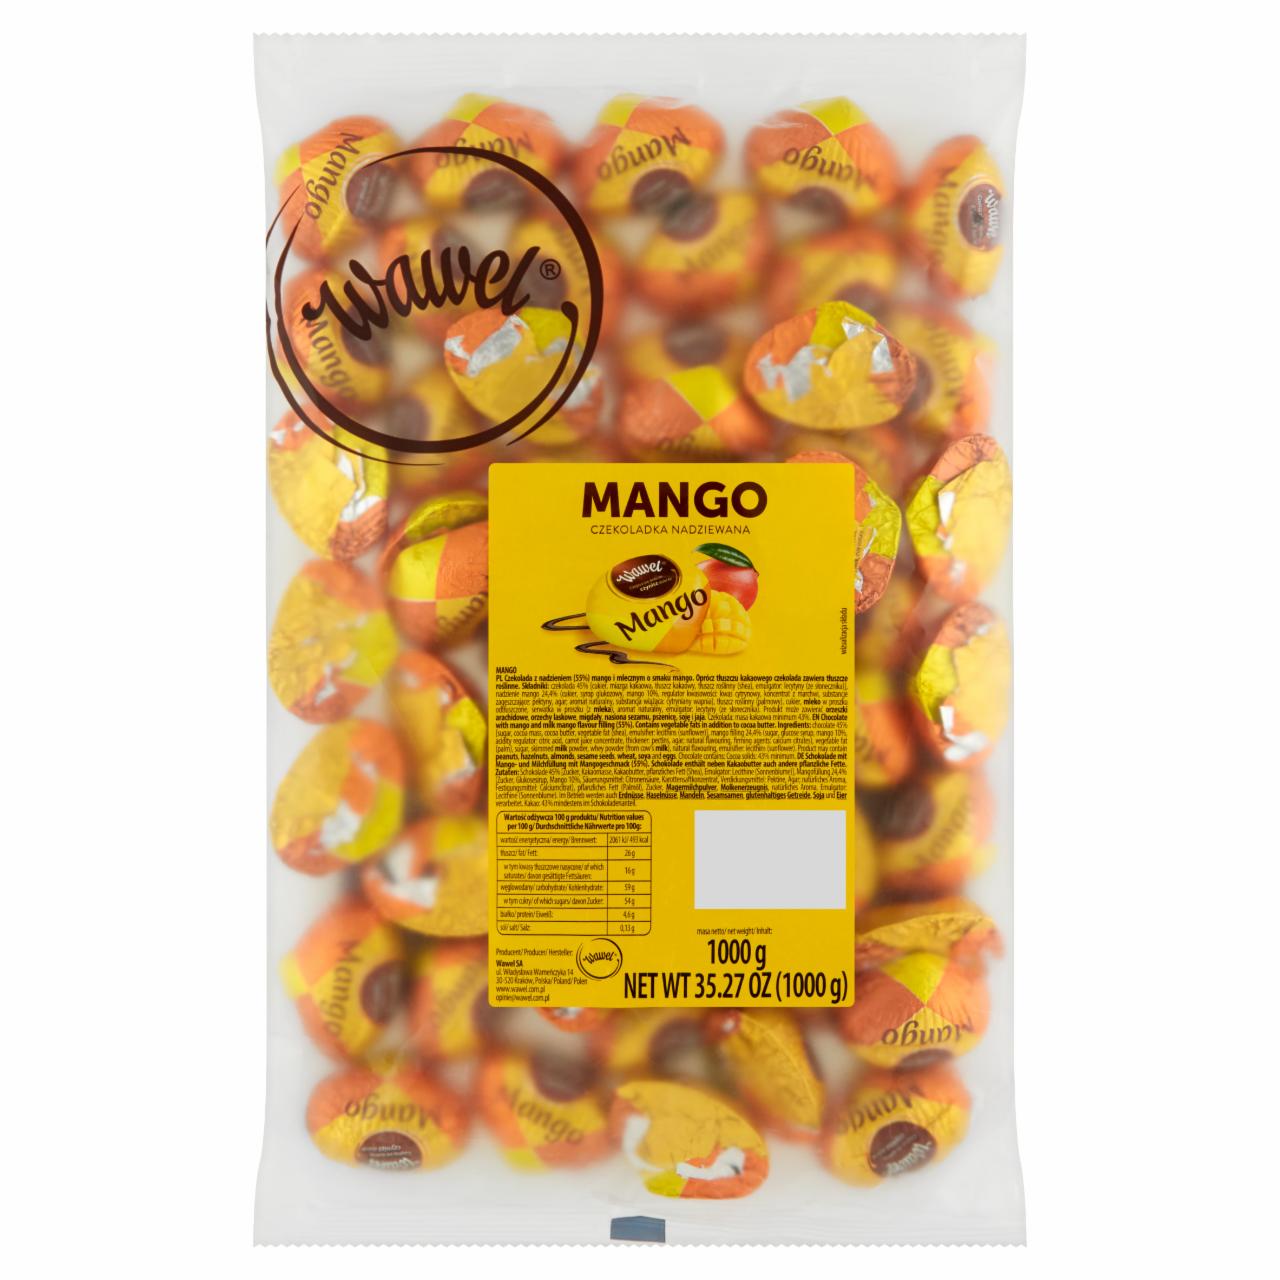 Zdjęcia - Wawel Czekoladka nadziewana mango 1000 g